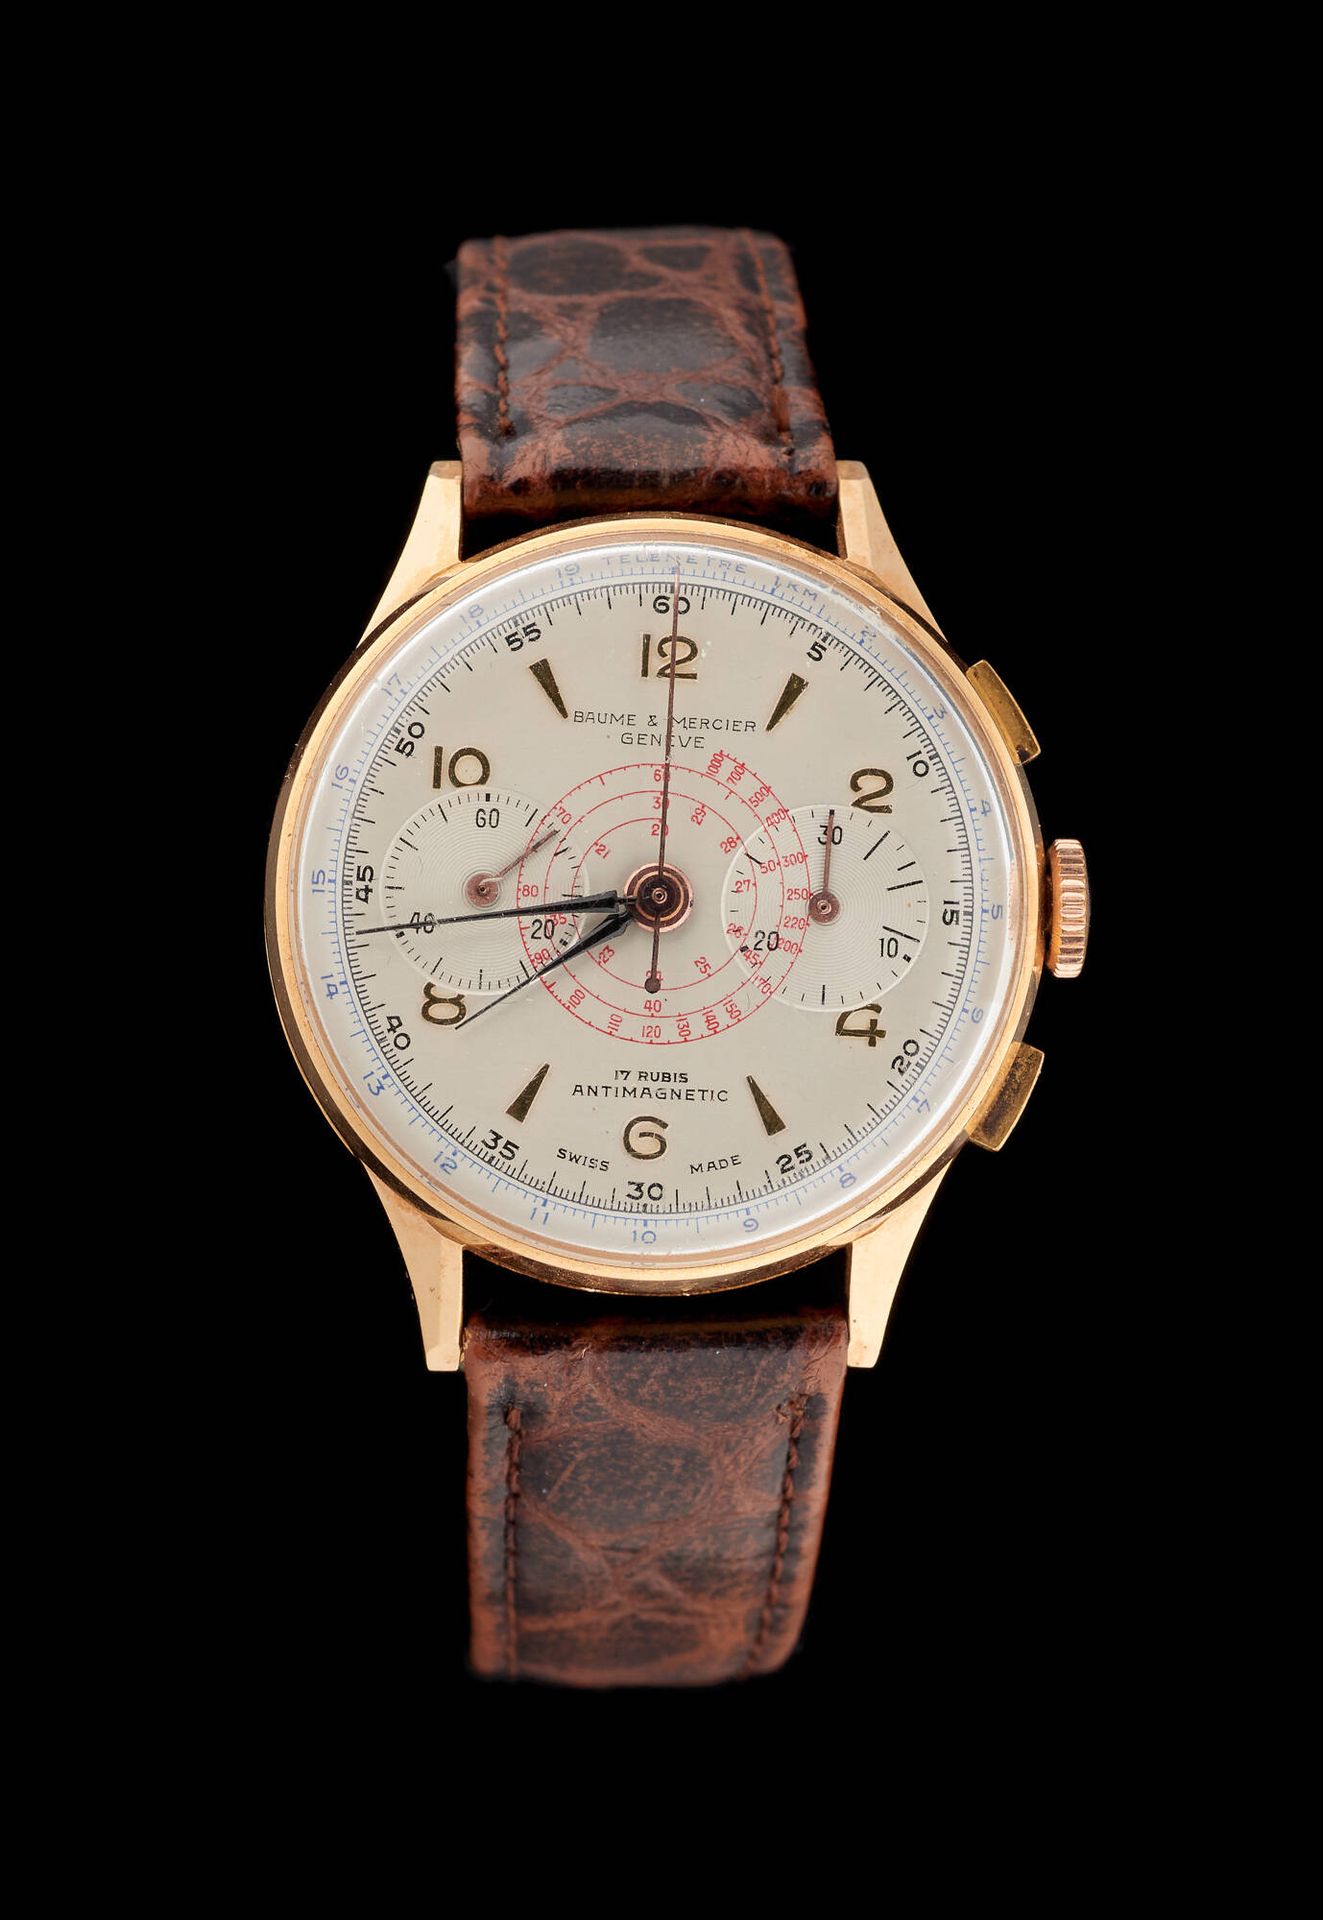 Baume & Mercier Uhren: Herrenarmbanduhr aus Gelbgold, Chronometer, antimagnetisc&hellip;